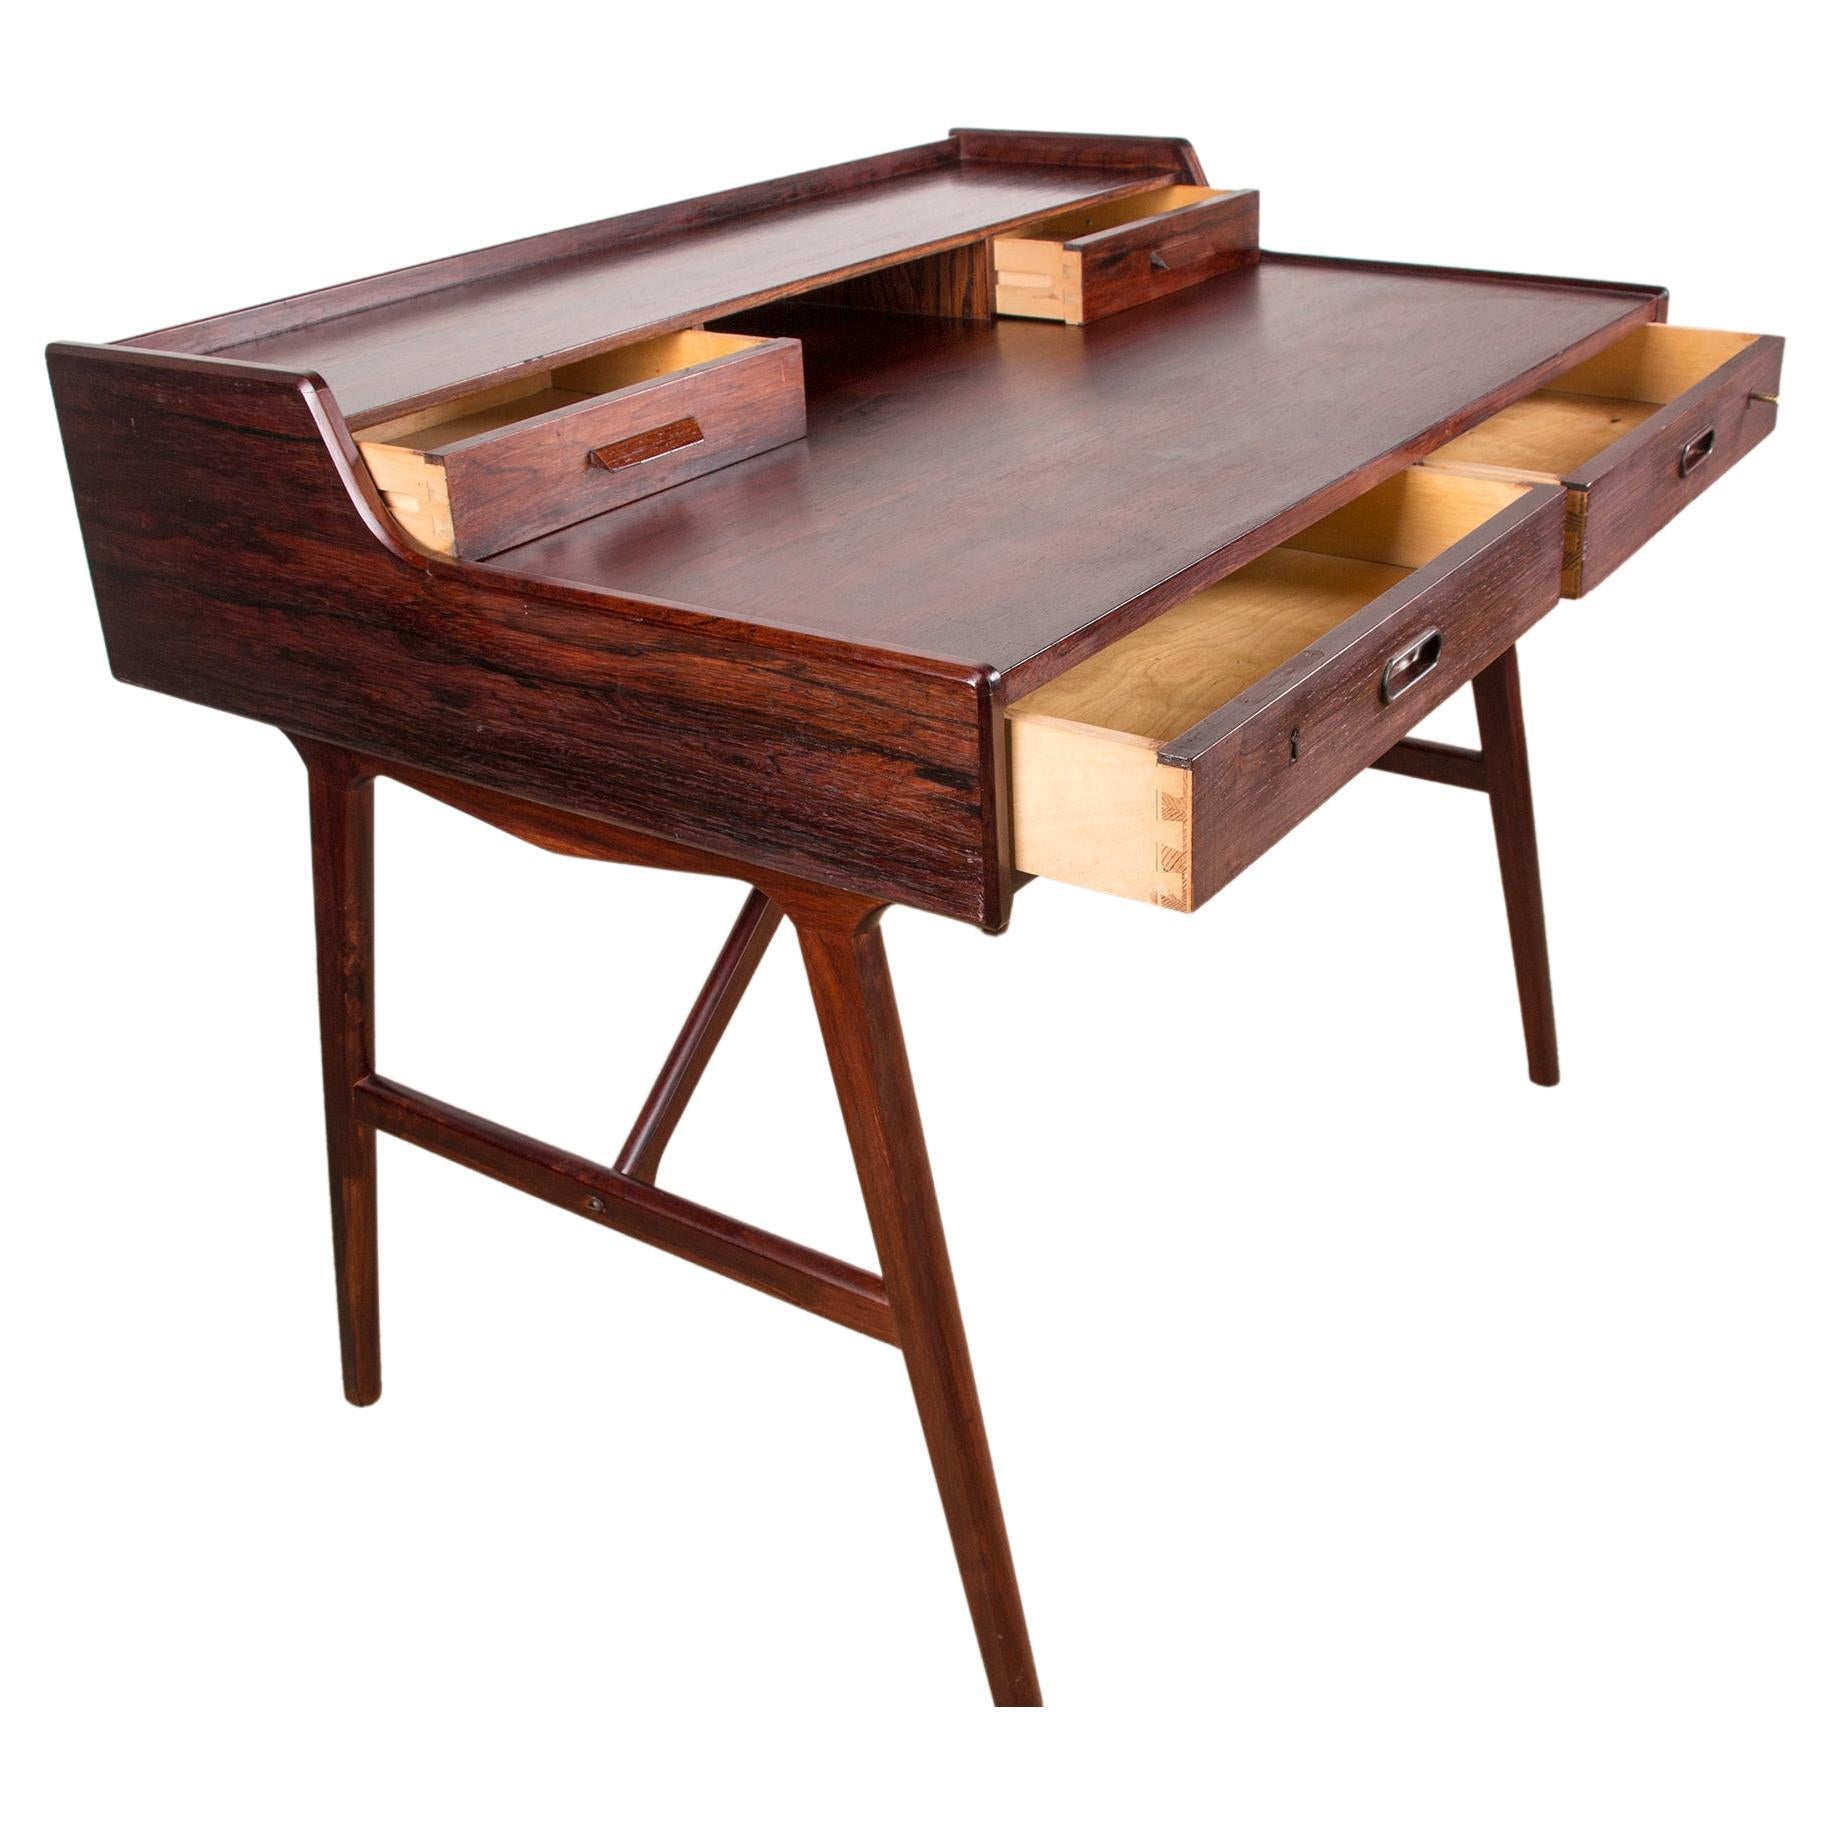 Dänischer Schreibtisch aus Rosenholz, Modell 56, von Arne Wahl Iversen für Vinde Mobelfabrik, 1960.